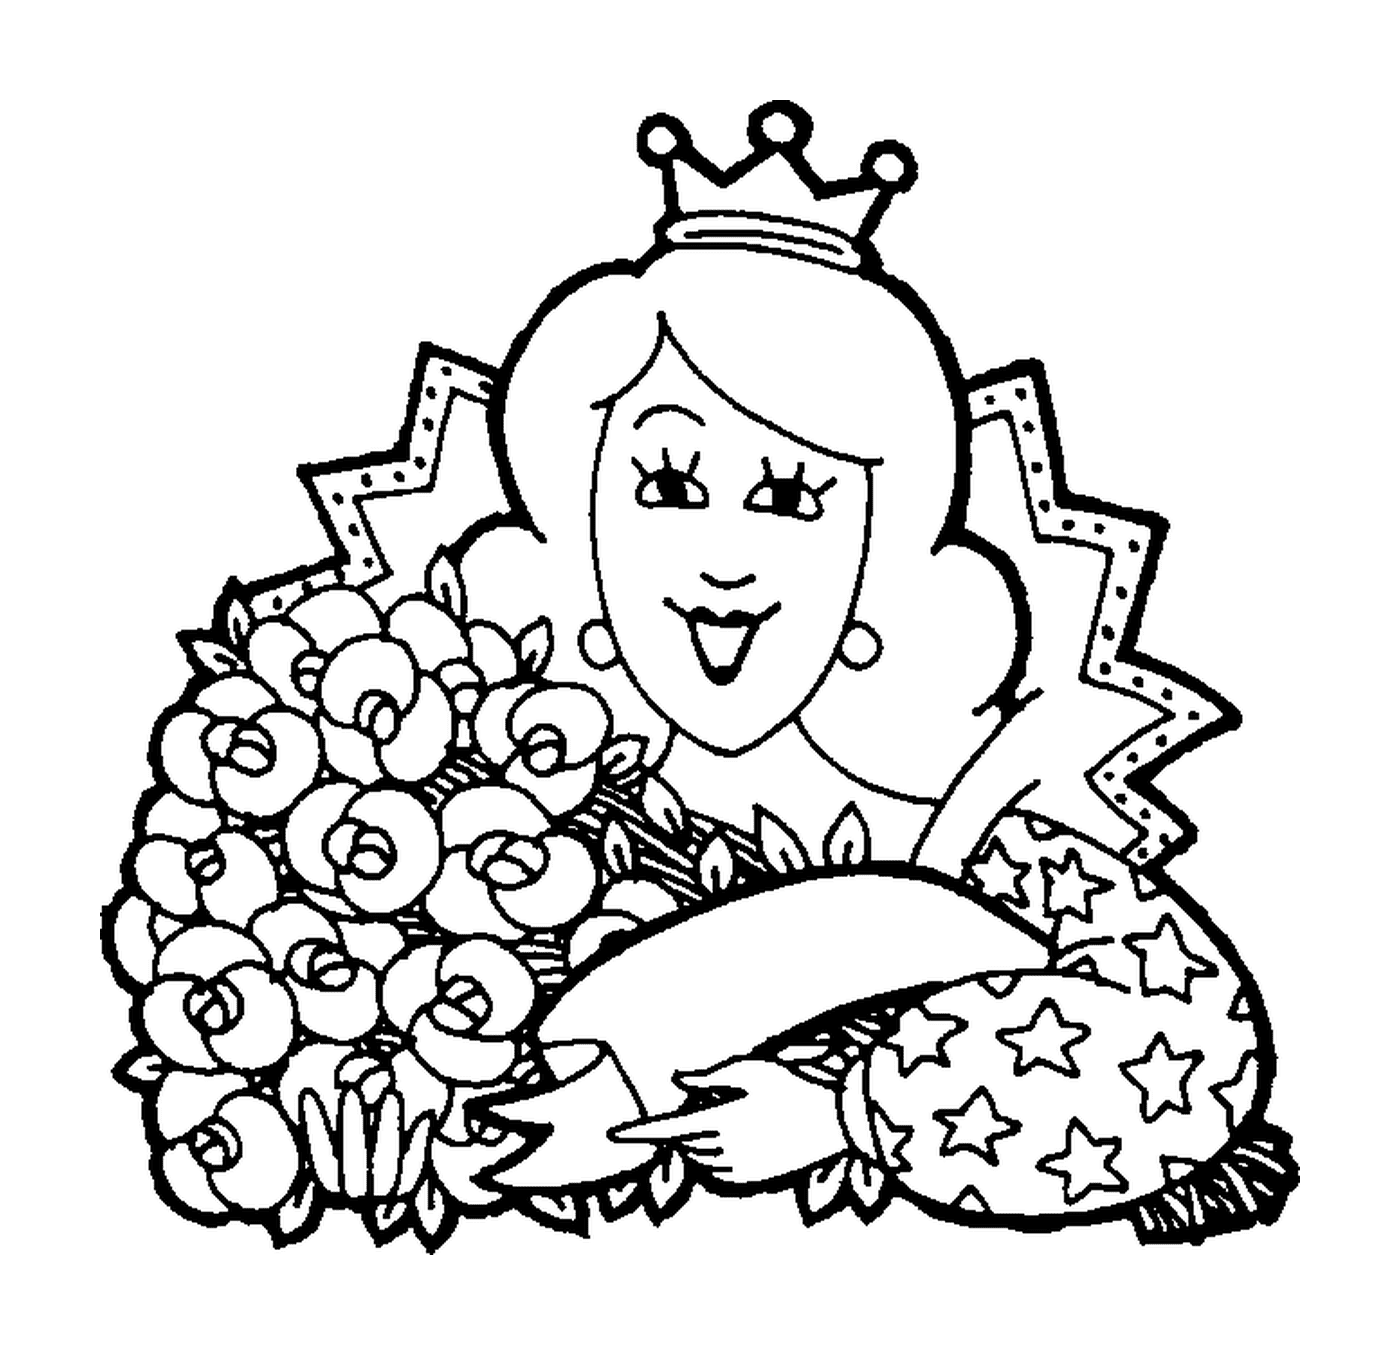  Una donna in possesso di fiori 